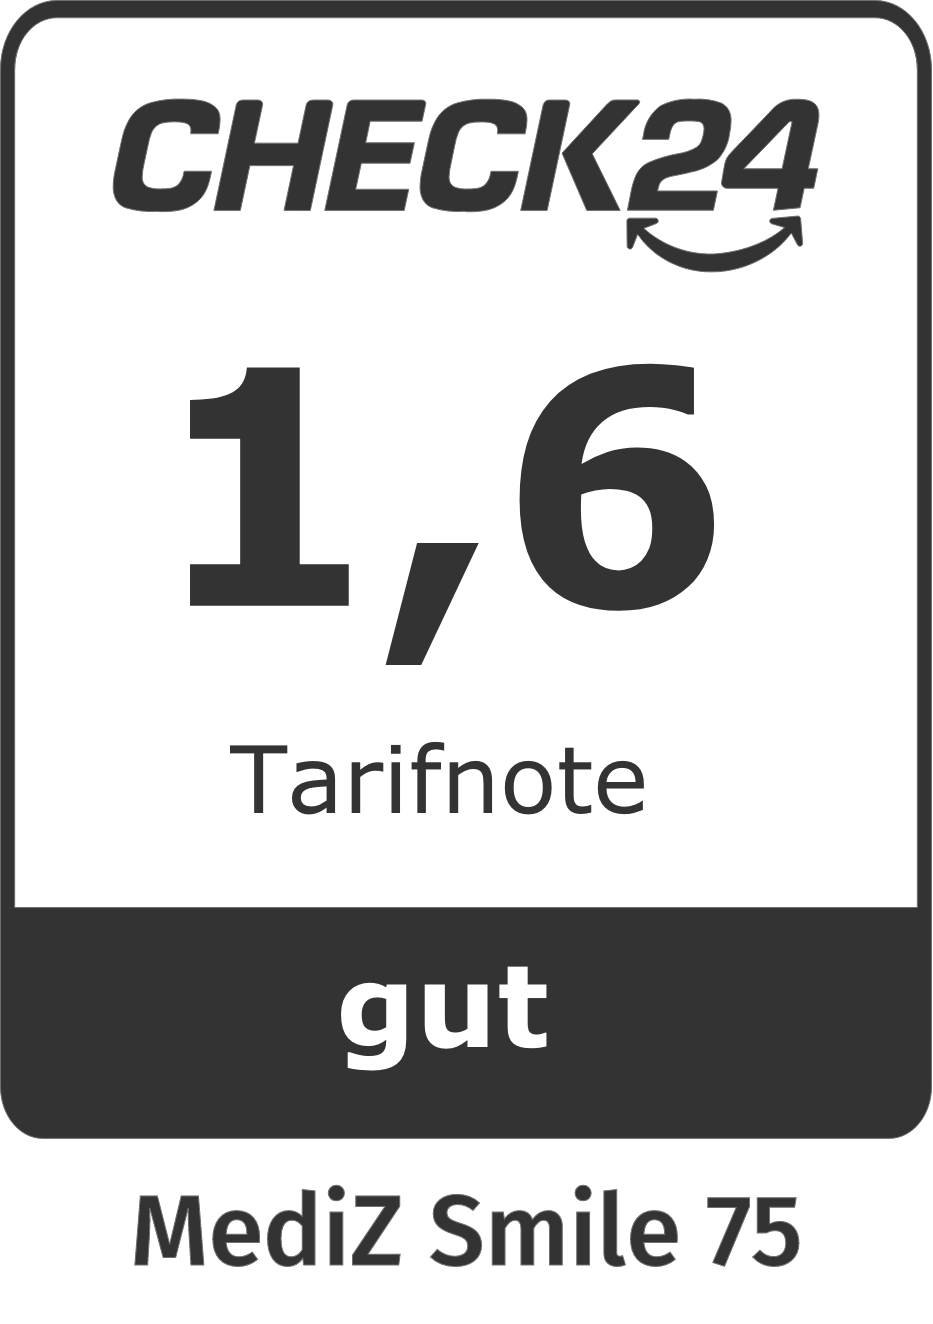 Check24 Tarifnote 1,6: Unser Gothaer MediZSmile hat bei Check24 die Tarifnote 1,6 erhalten.